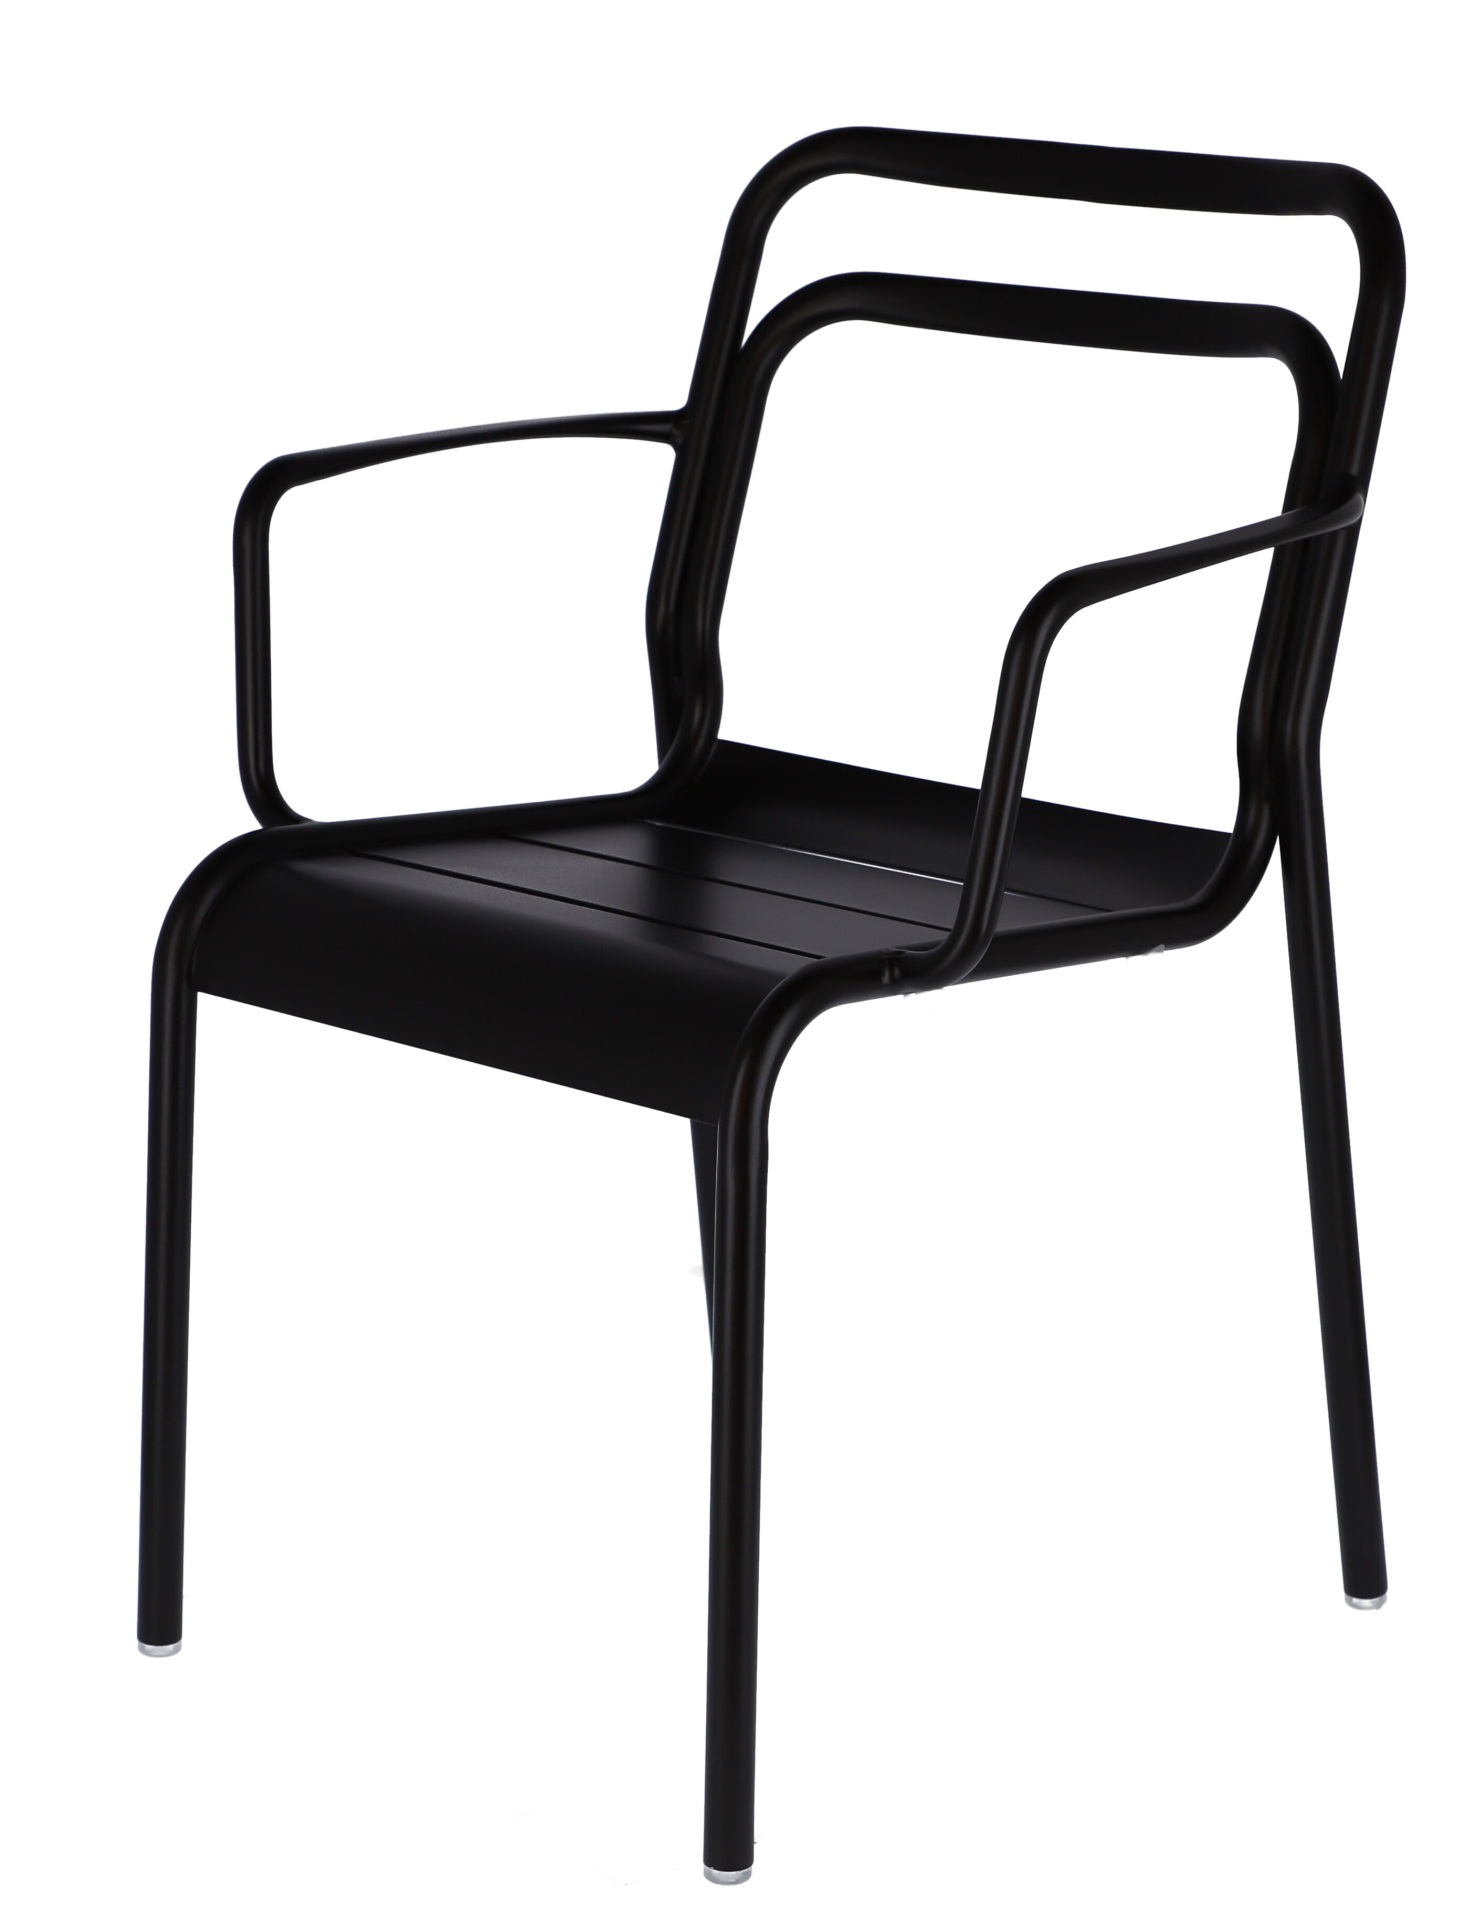 Der moderne Gartensessel Live wurde aus Aluminium hergestellt. Designet wurde er von der Marke Jan Kurtz. Die Farbe des Sessels ist Schwarz.